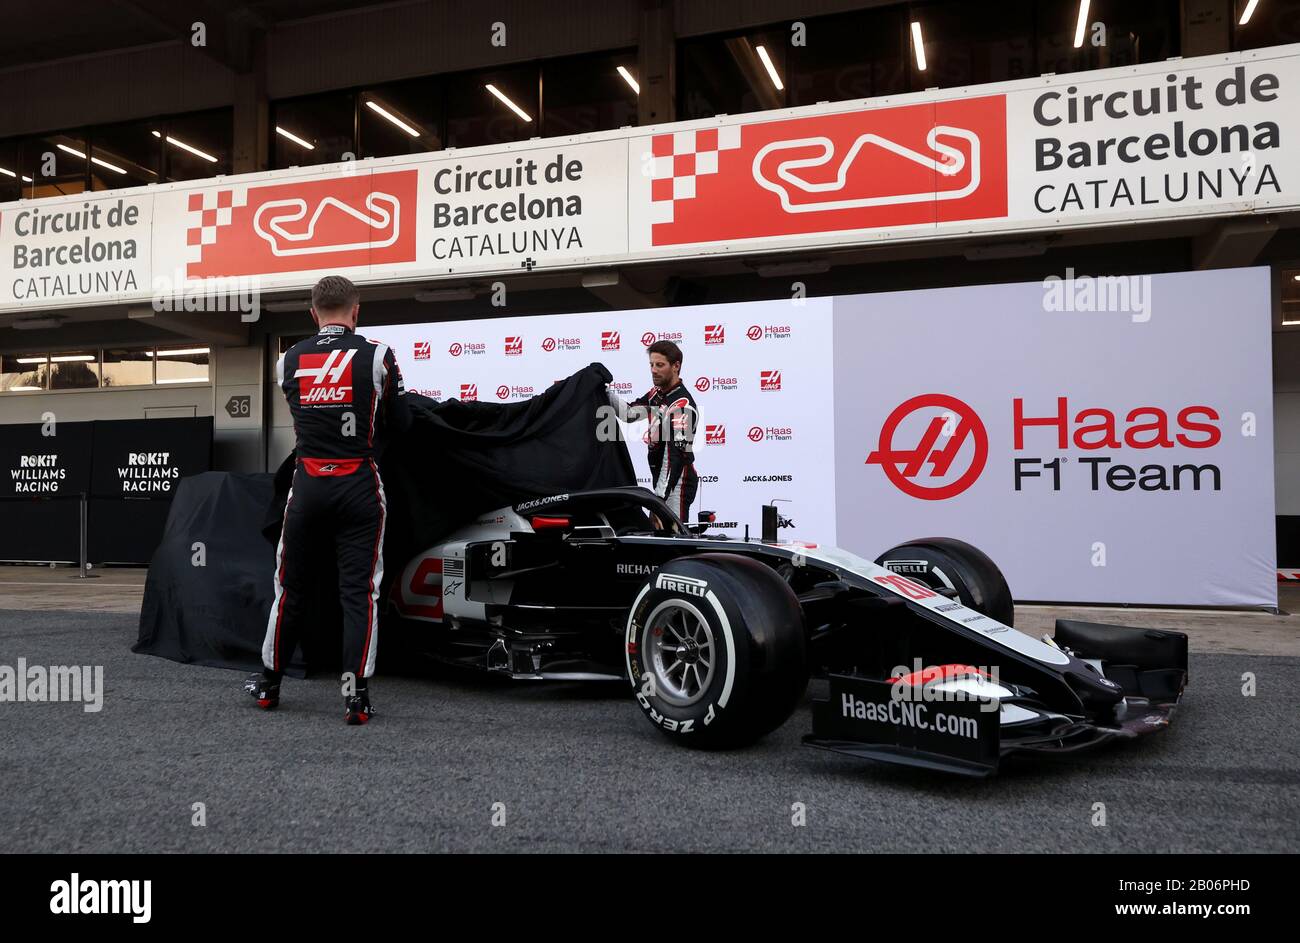 Los pilotos de Haas F1 Kevin Magnussen (izquierda) y Romain Grosjean  desvelan el nuevo coche para la temporada de F1 2020 durante el primer día  de pruebas previas a la temporada en